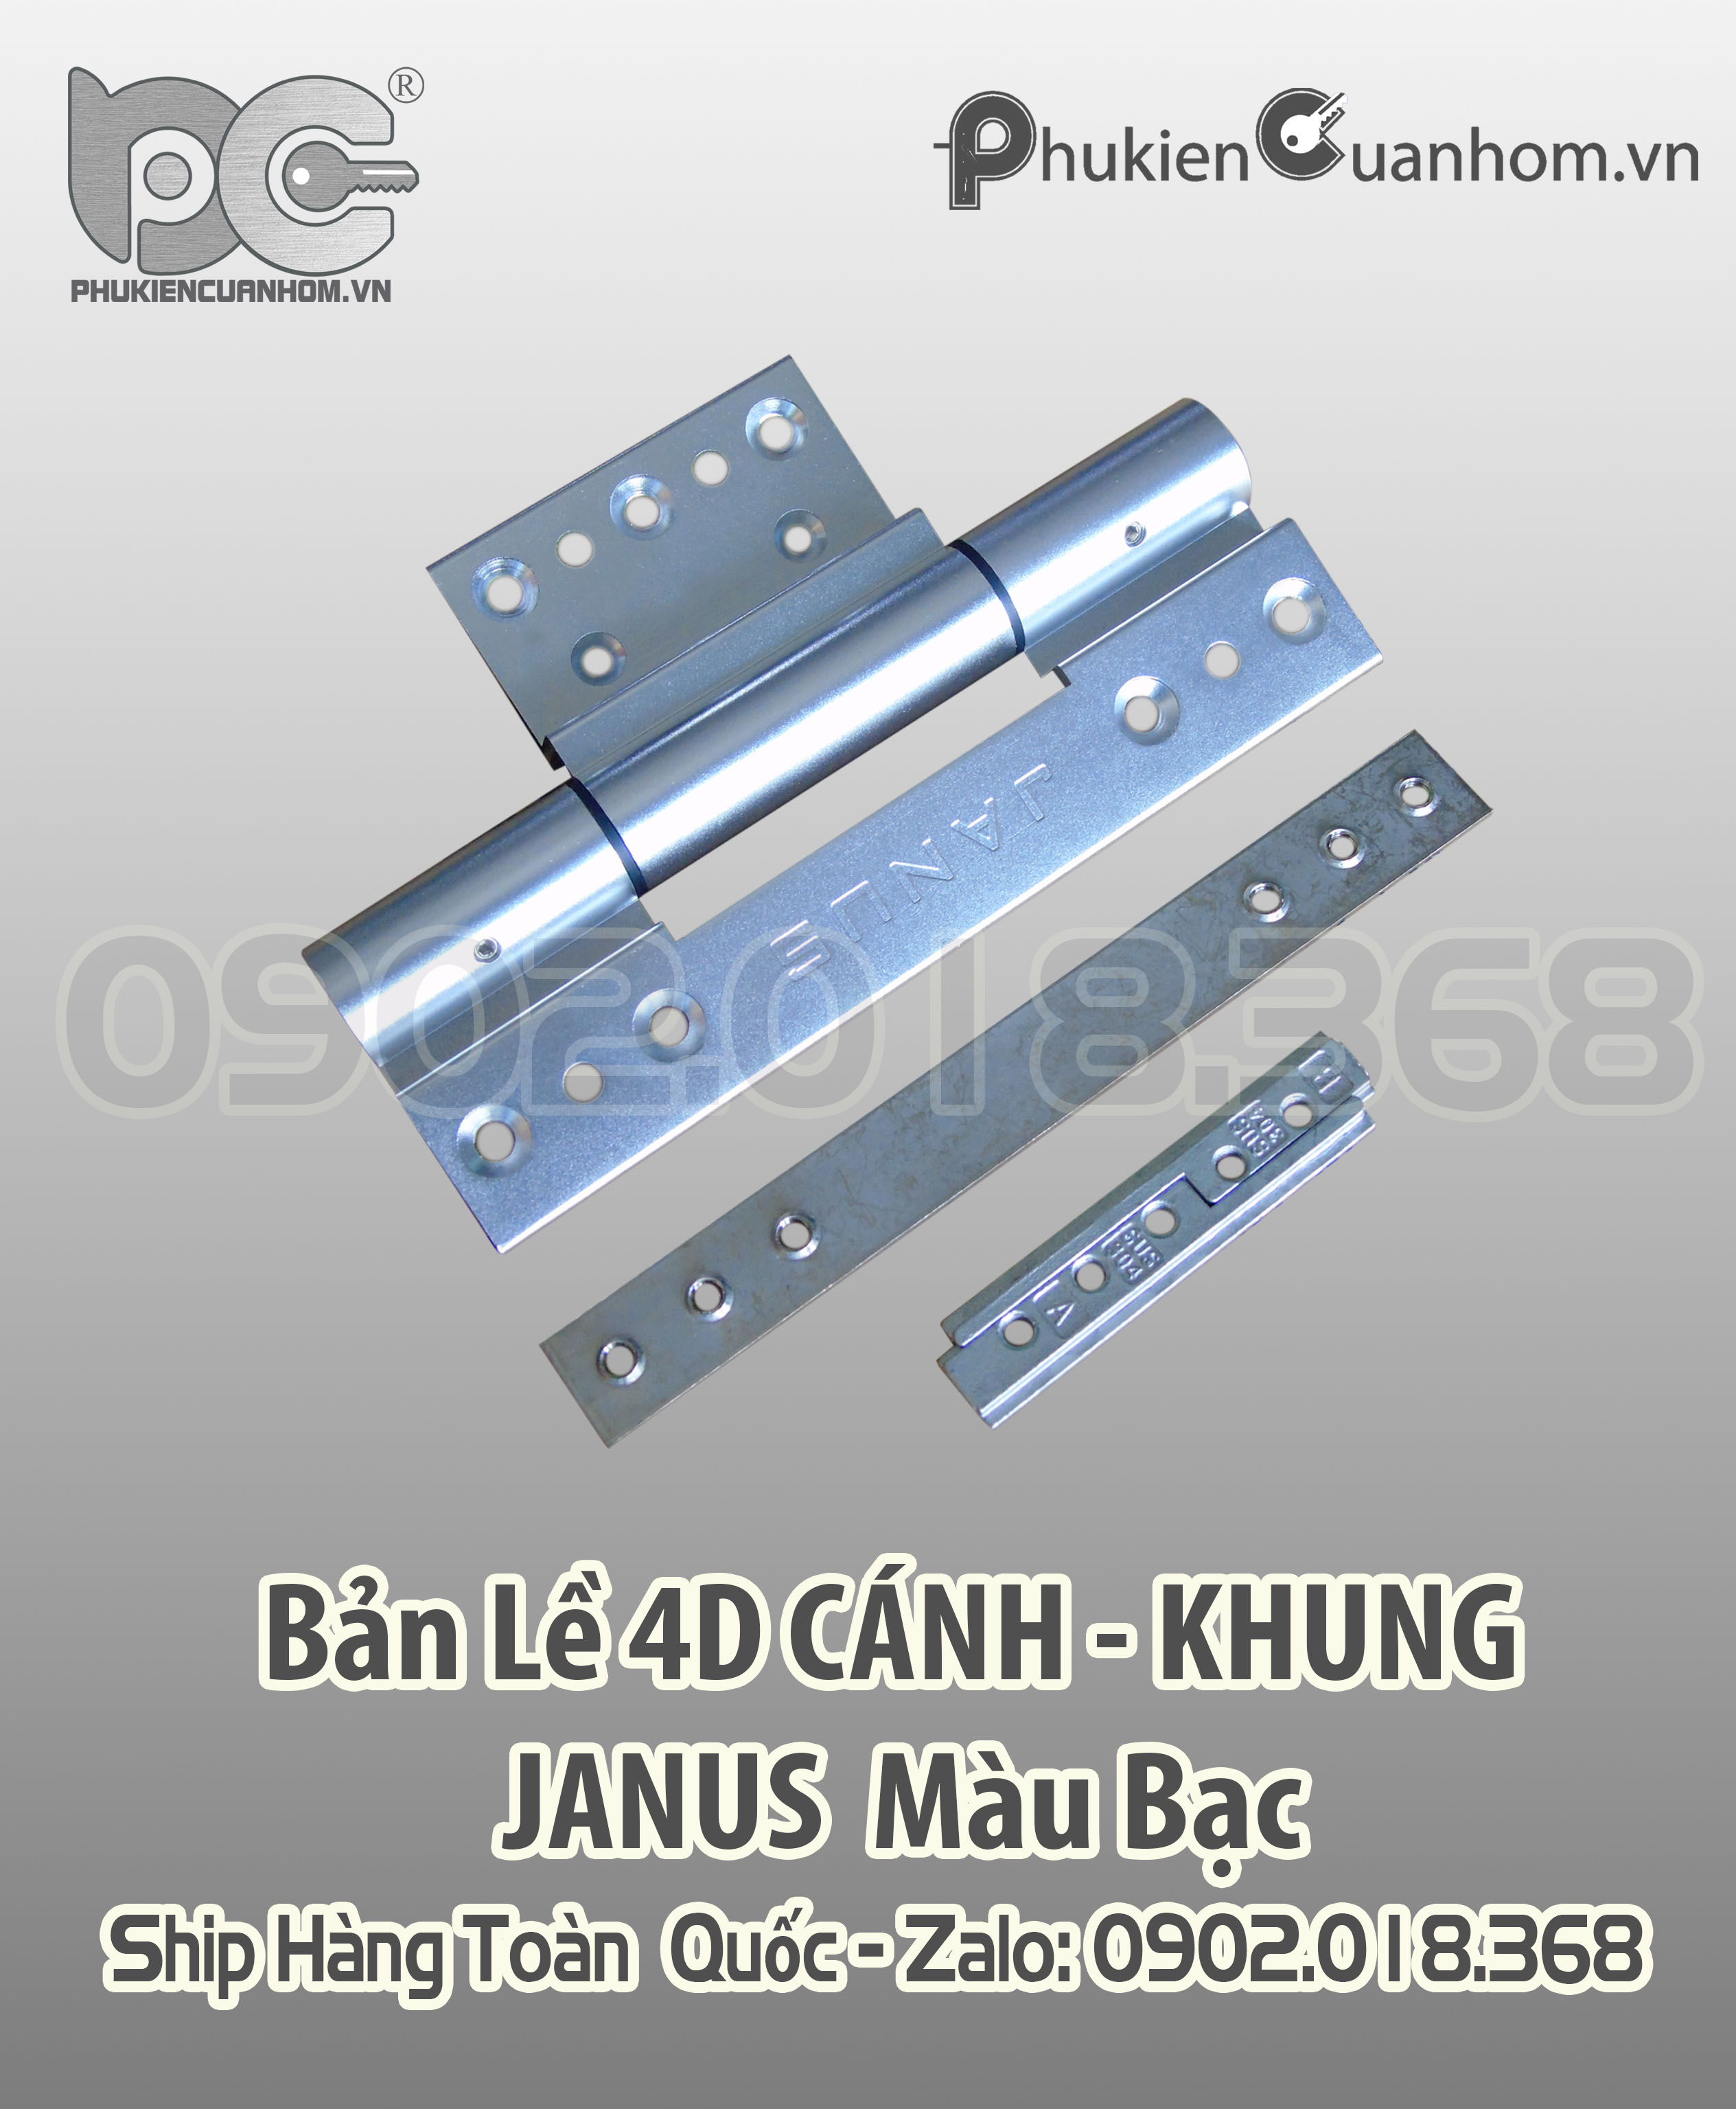 Bản lề 4D cánh khung cao cấp Xingfa 55 hiệu Janus màu bạc